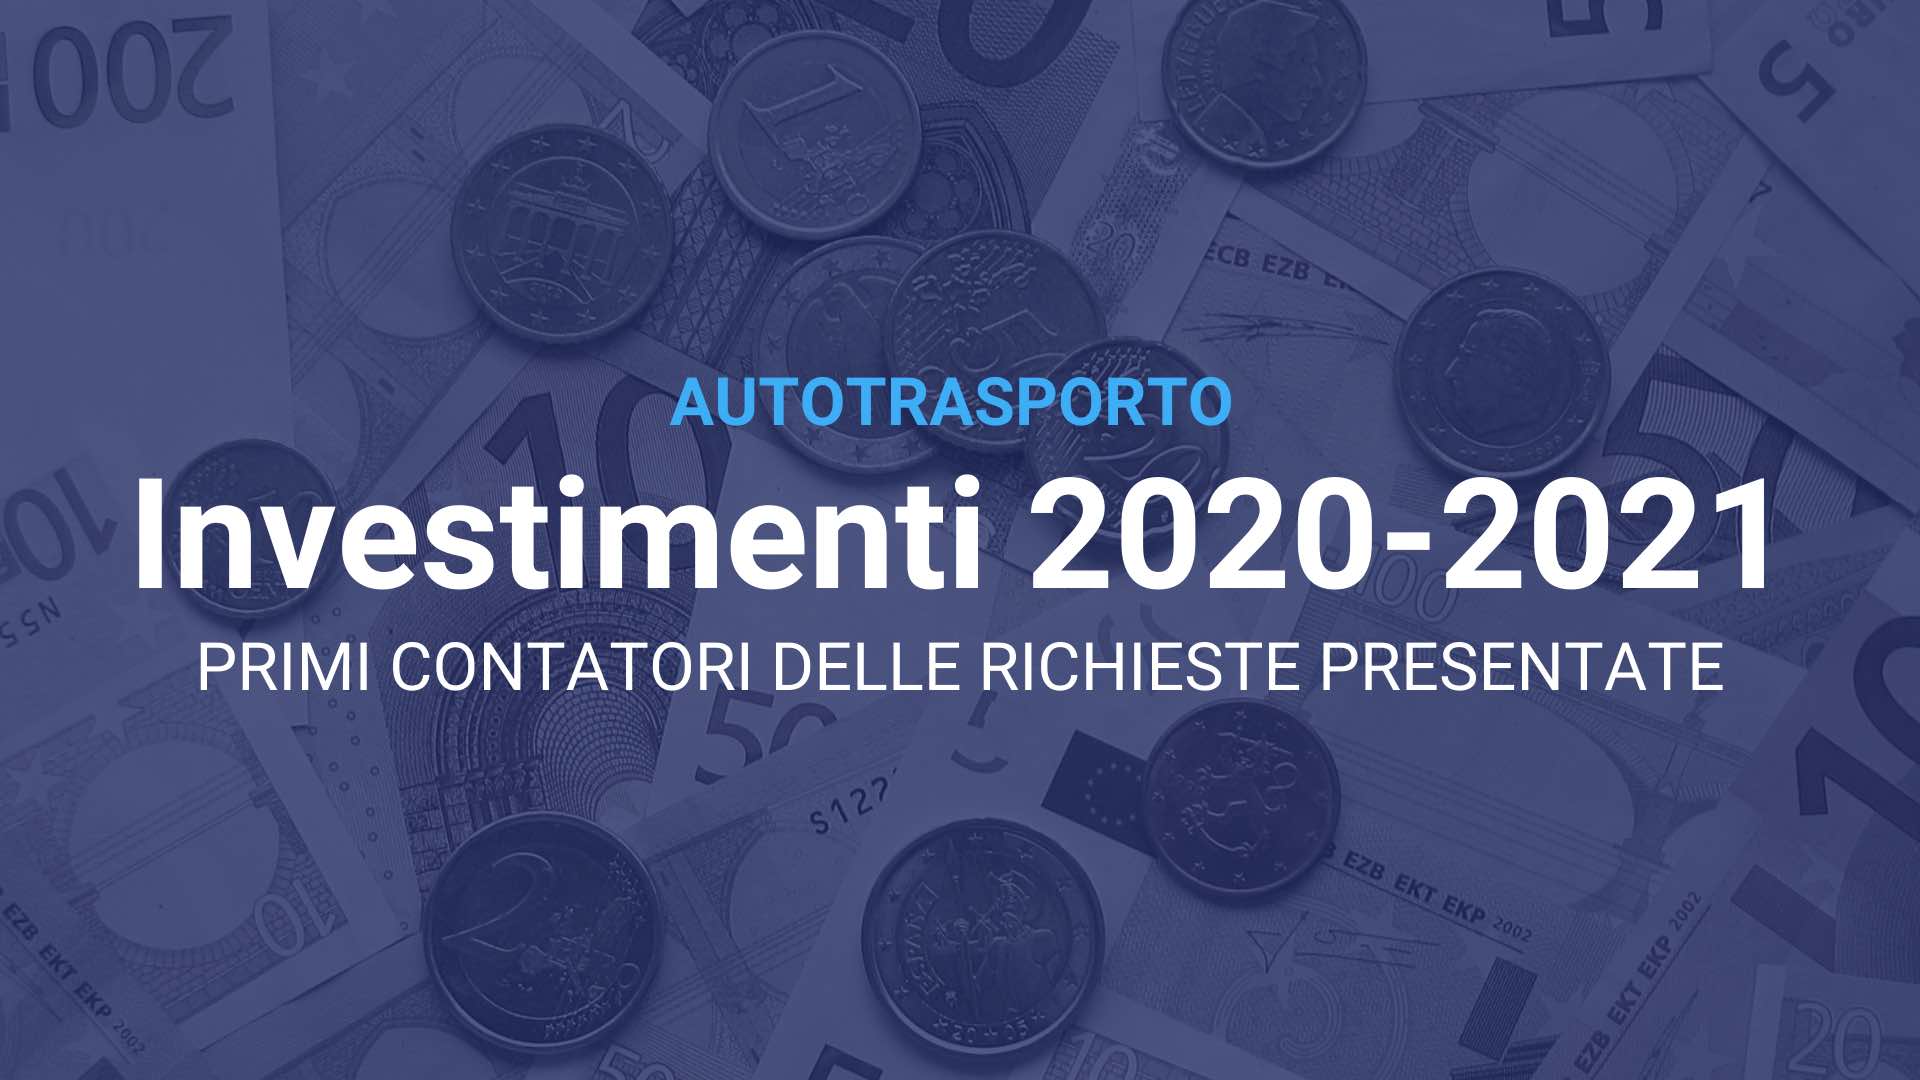 Autotrasporto Investimenti 2020 2021 v2